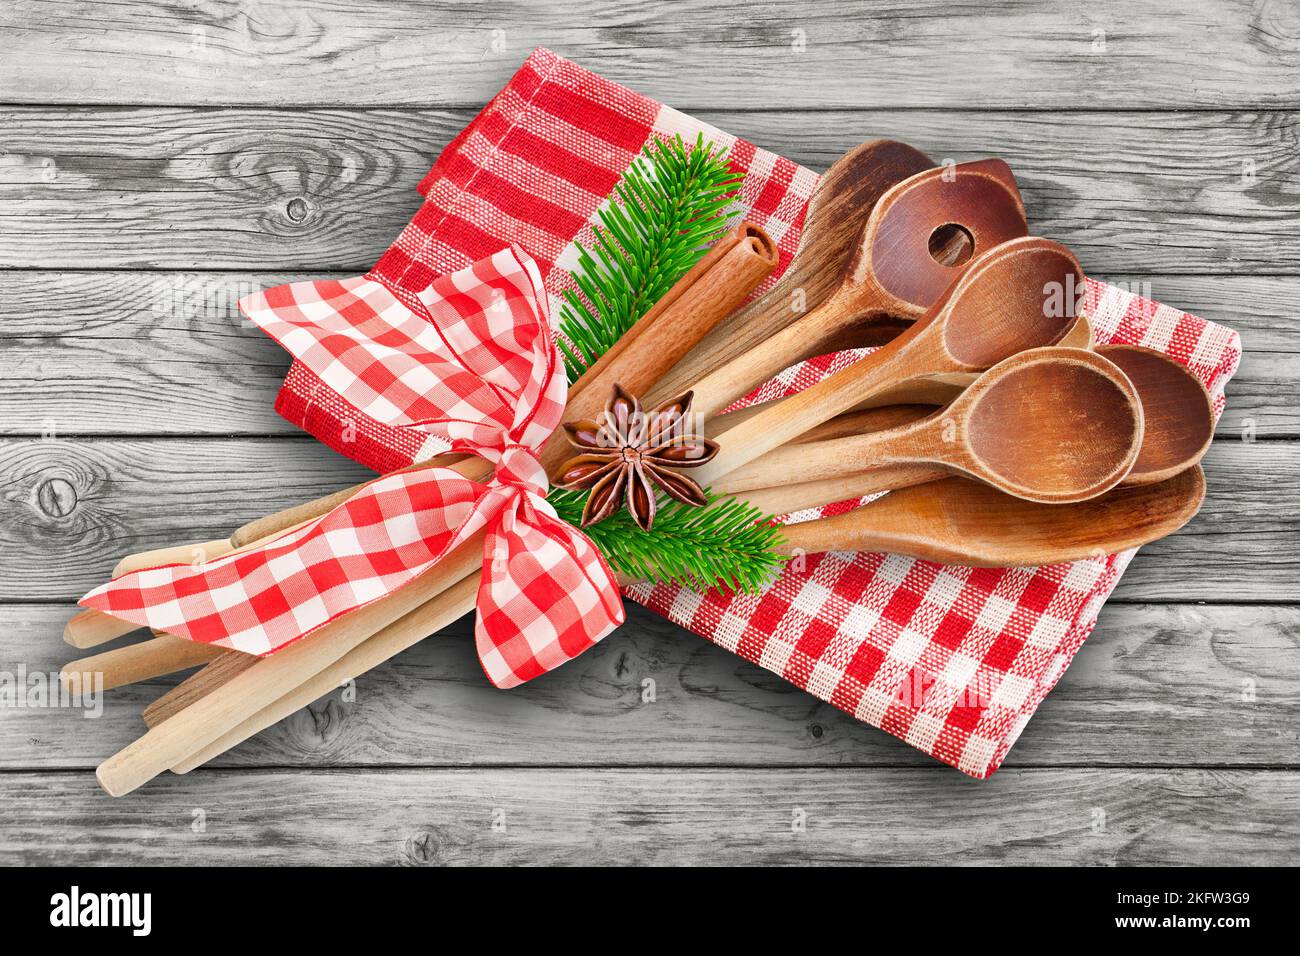 Natale e cucchiai da cucina in legno con cannella, rami di abete, anice e asciugamano rosso Foto Stock